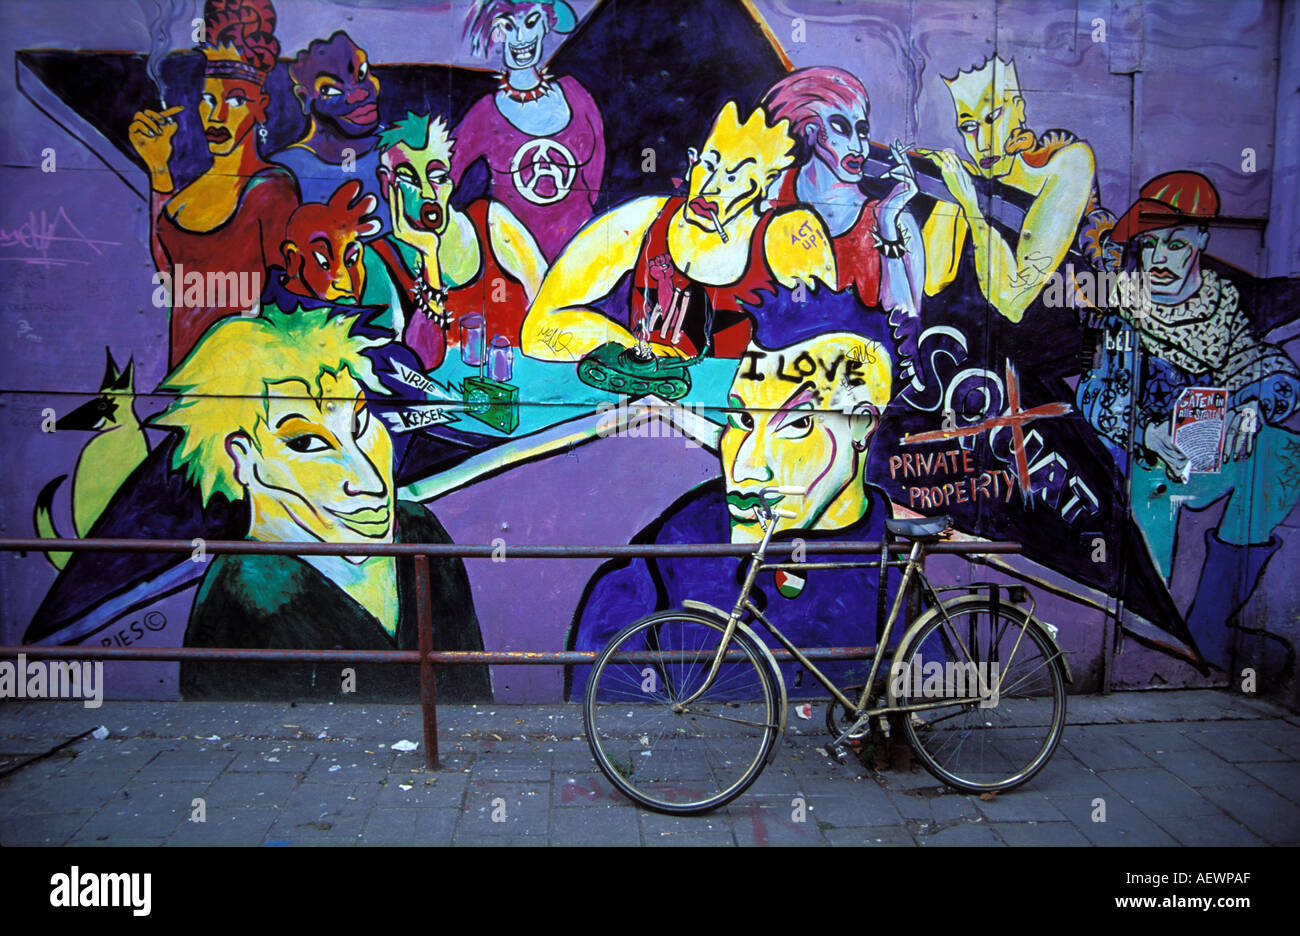 Amsterdam graffiti on a wall Stock Photo